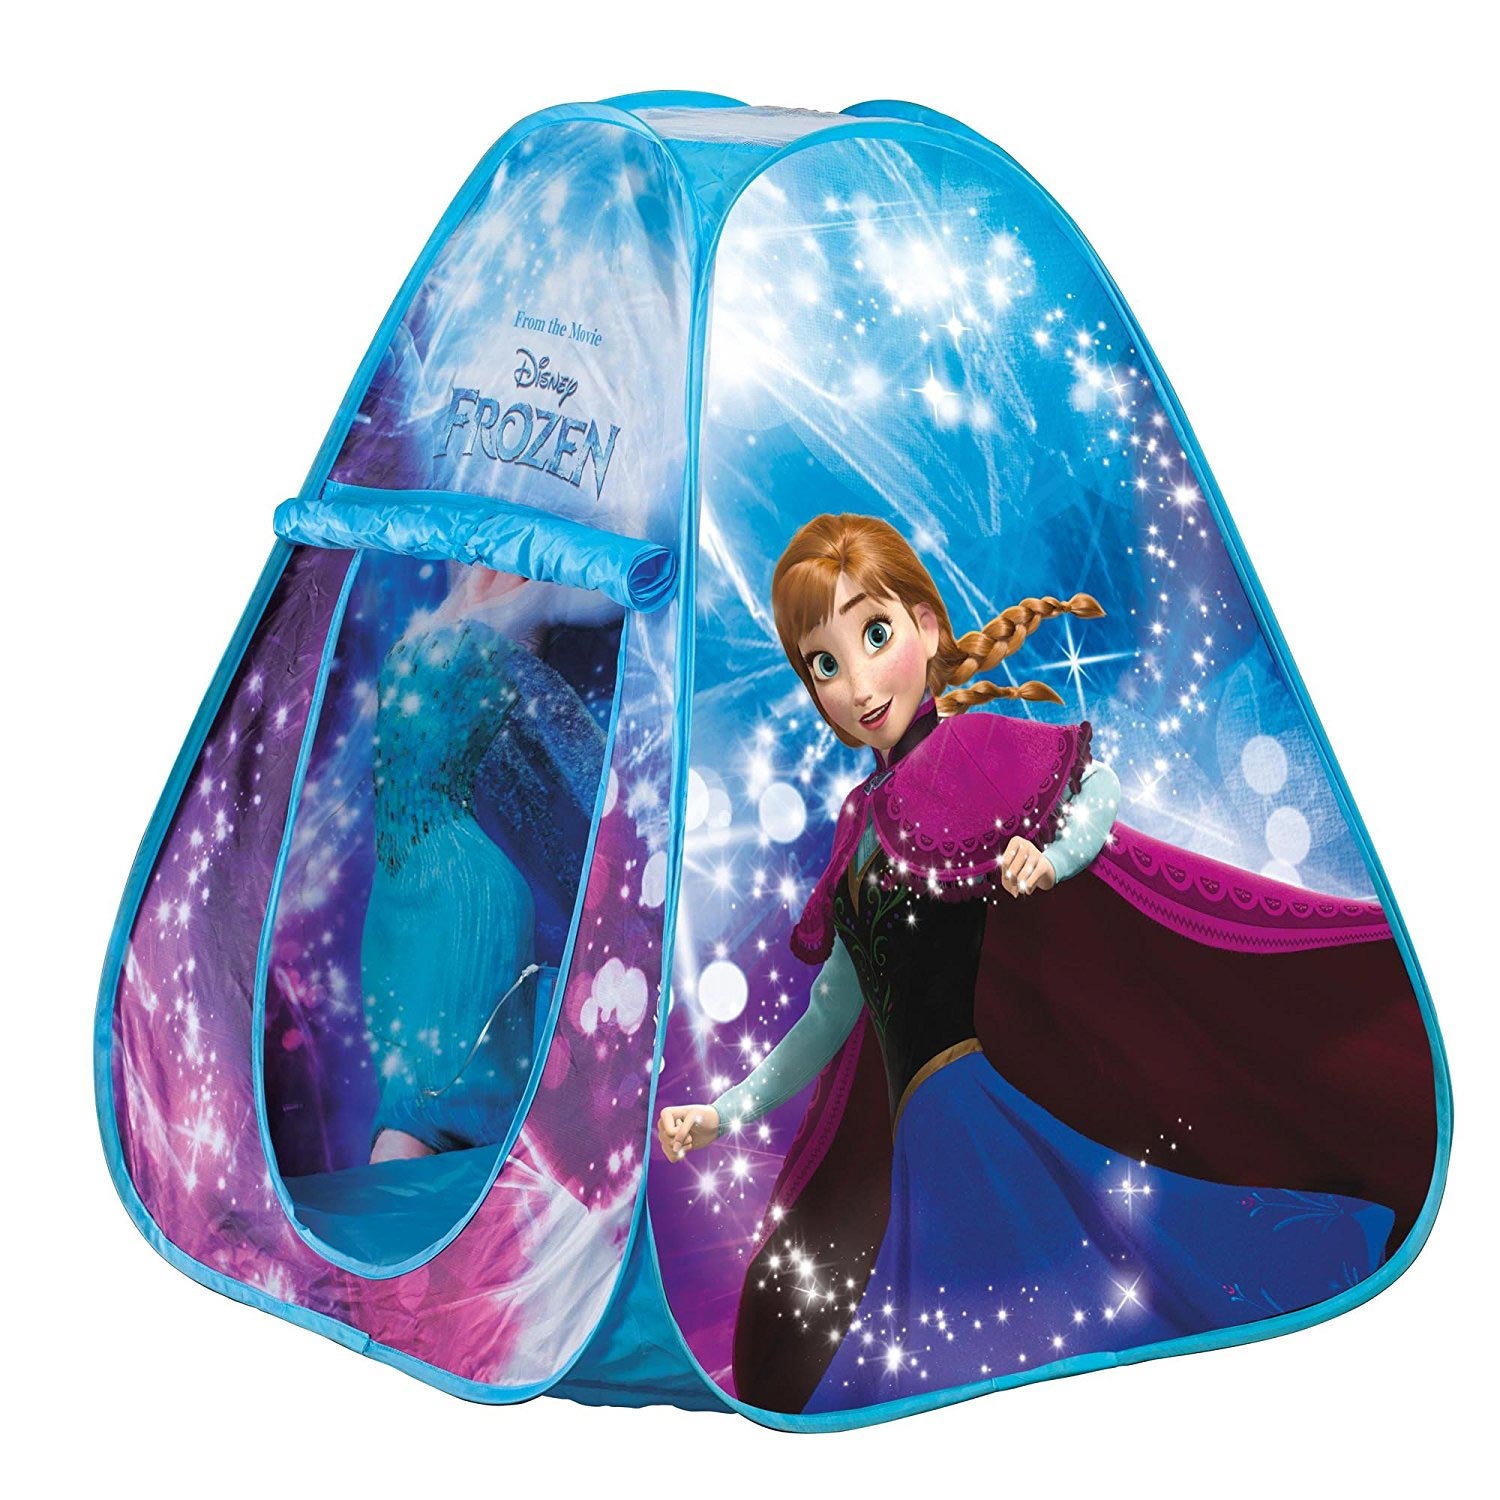 Disney Frozen Pop-up Tent